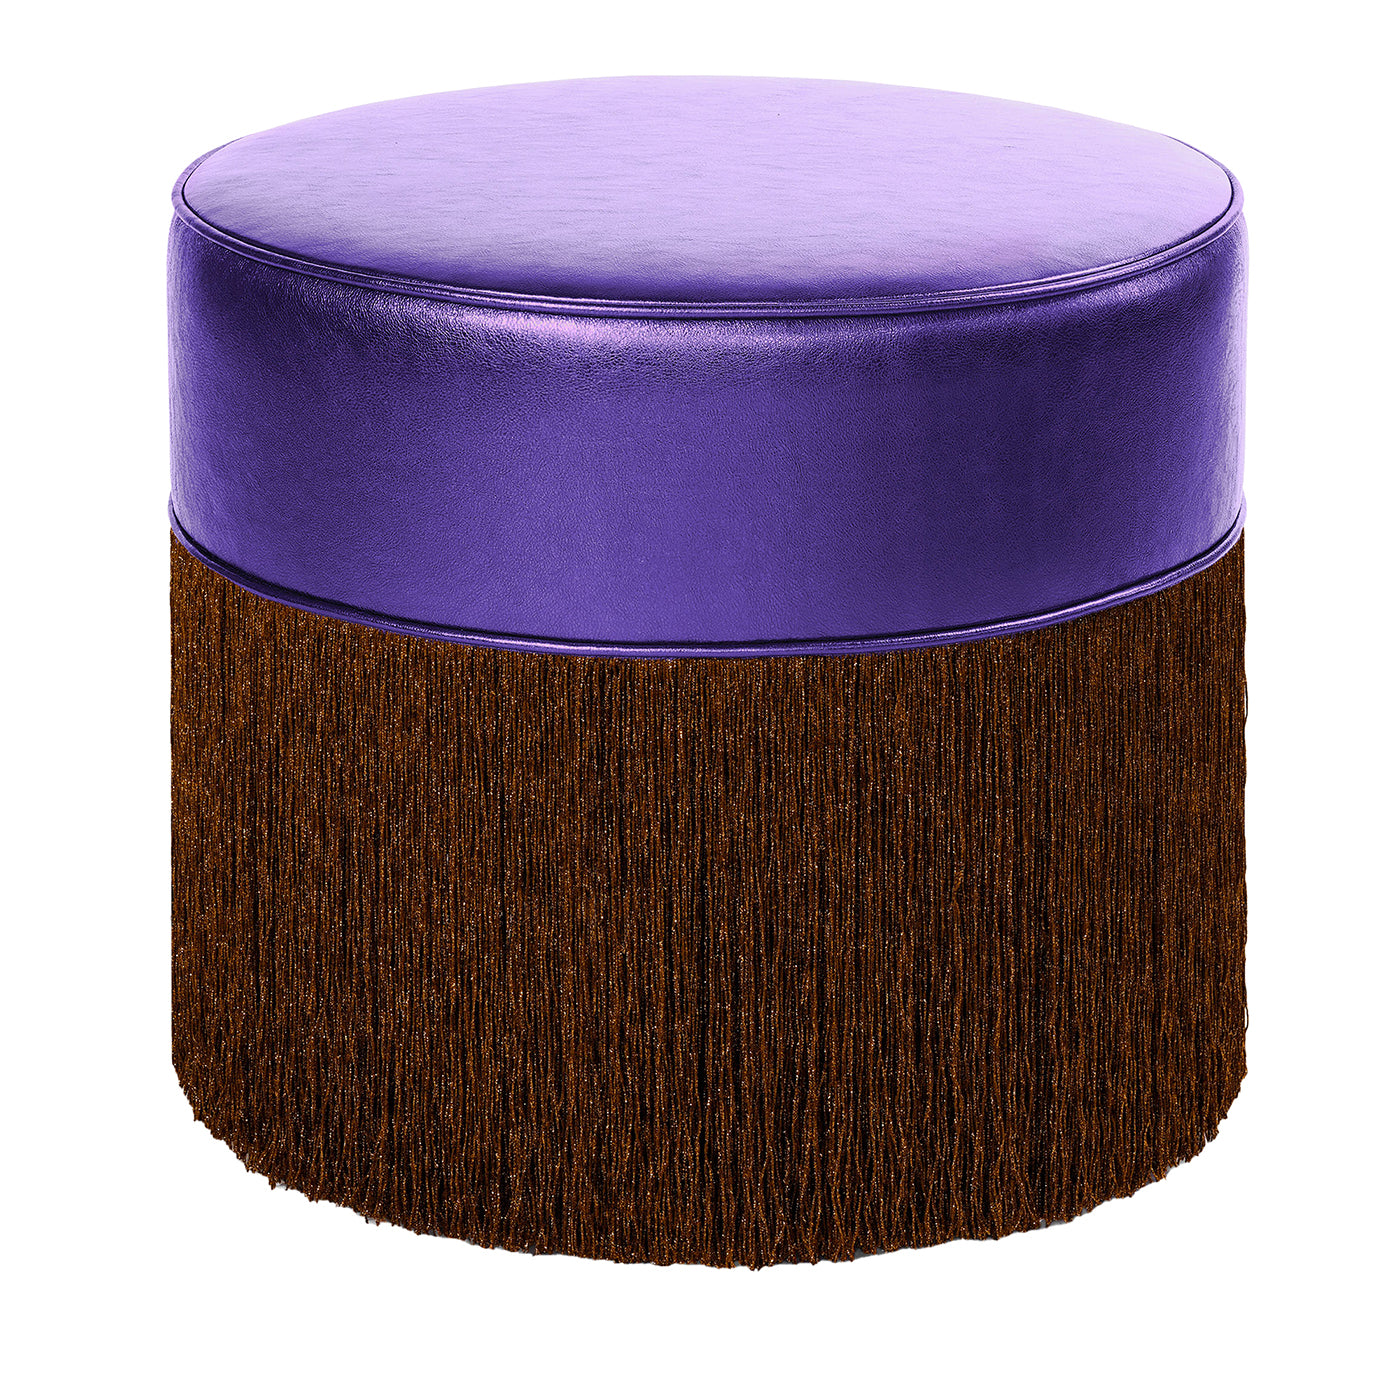 Pouf in pelle metallizzata viola brillante con frange in lurex marrone - Vista principale